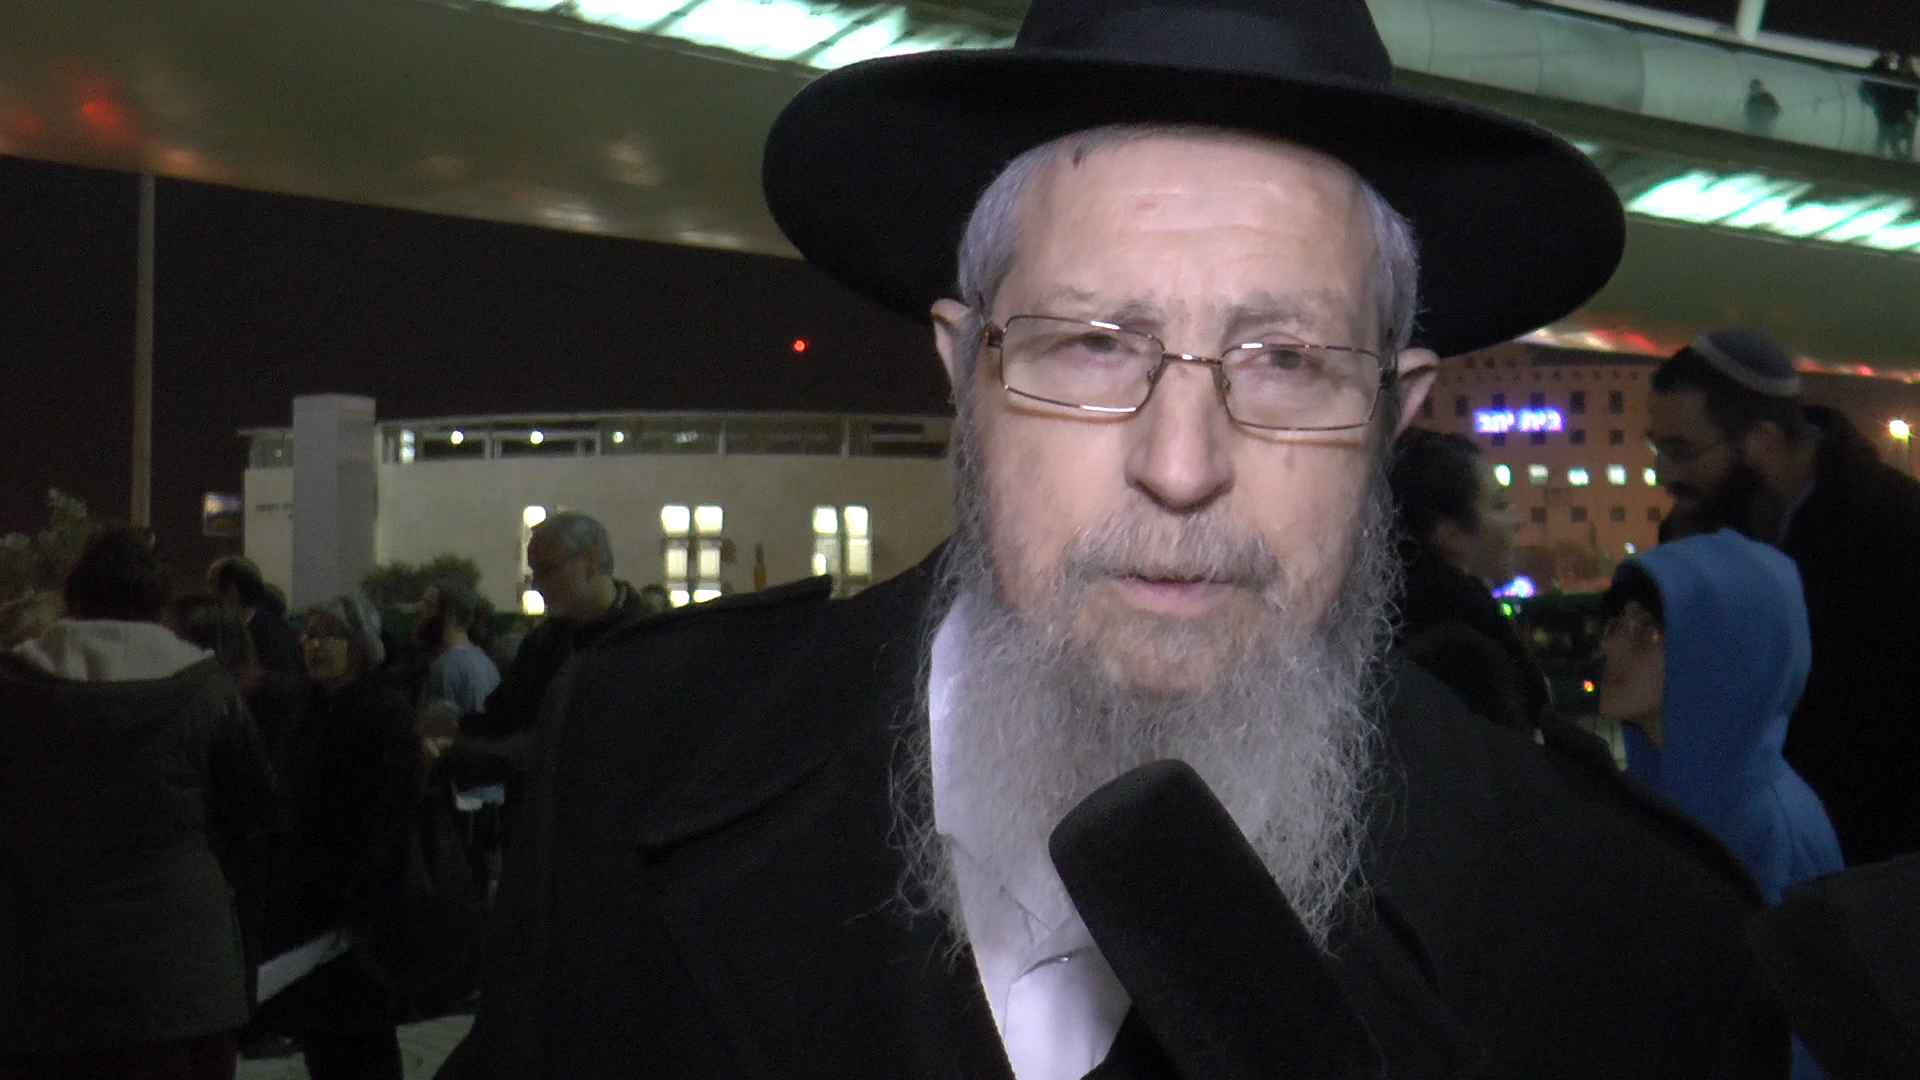 הרב ישראל אריאל: "הקול היהודי עושה עבודה גדולה עם תחקירים שבל ישכחו הדברים"